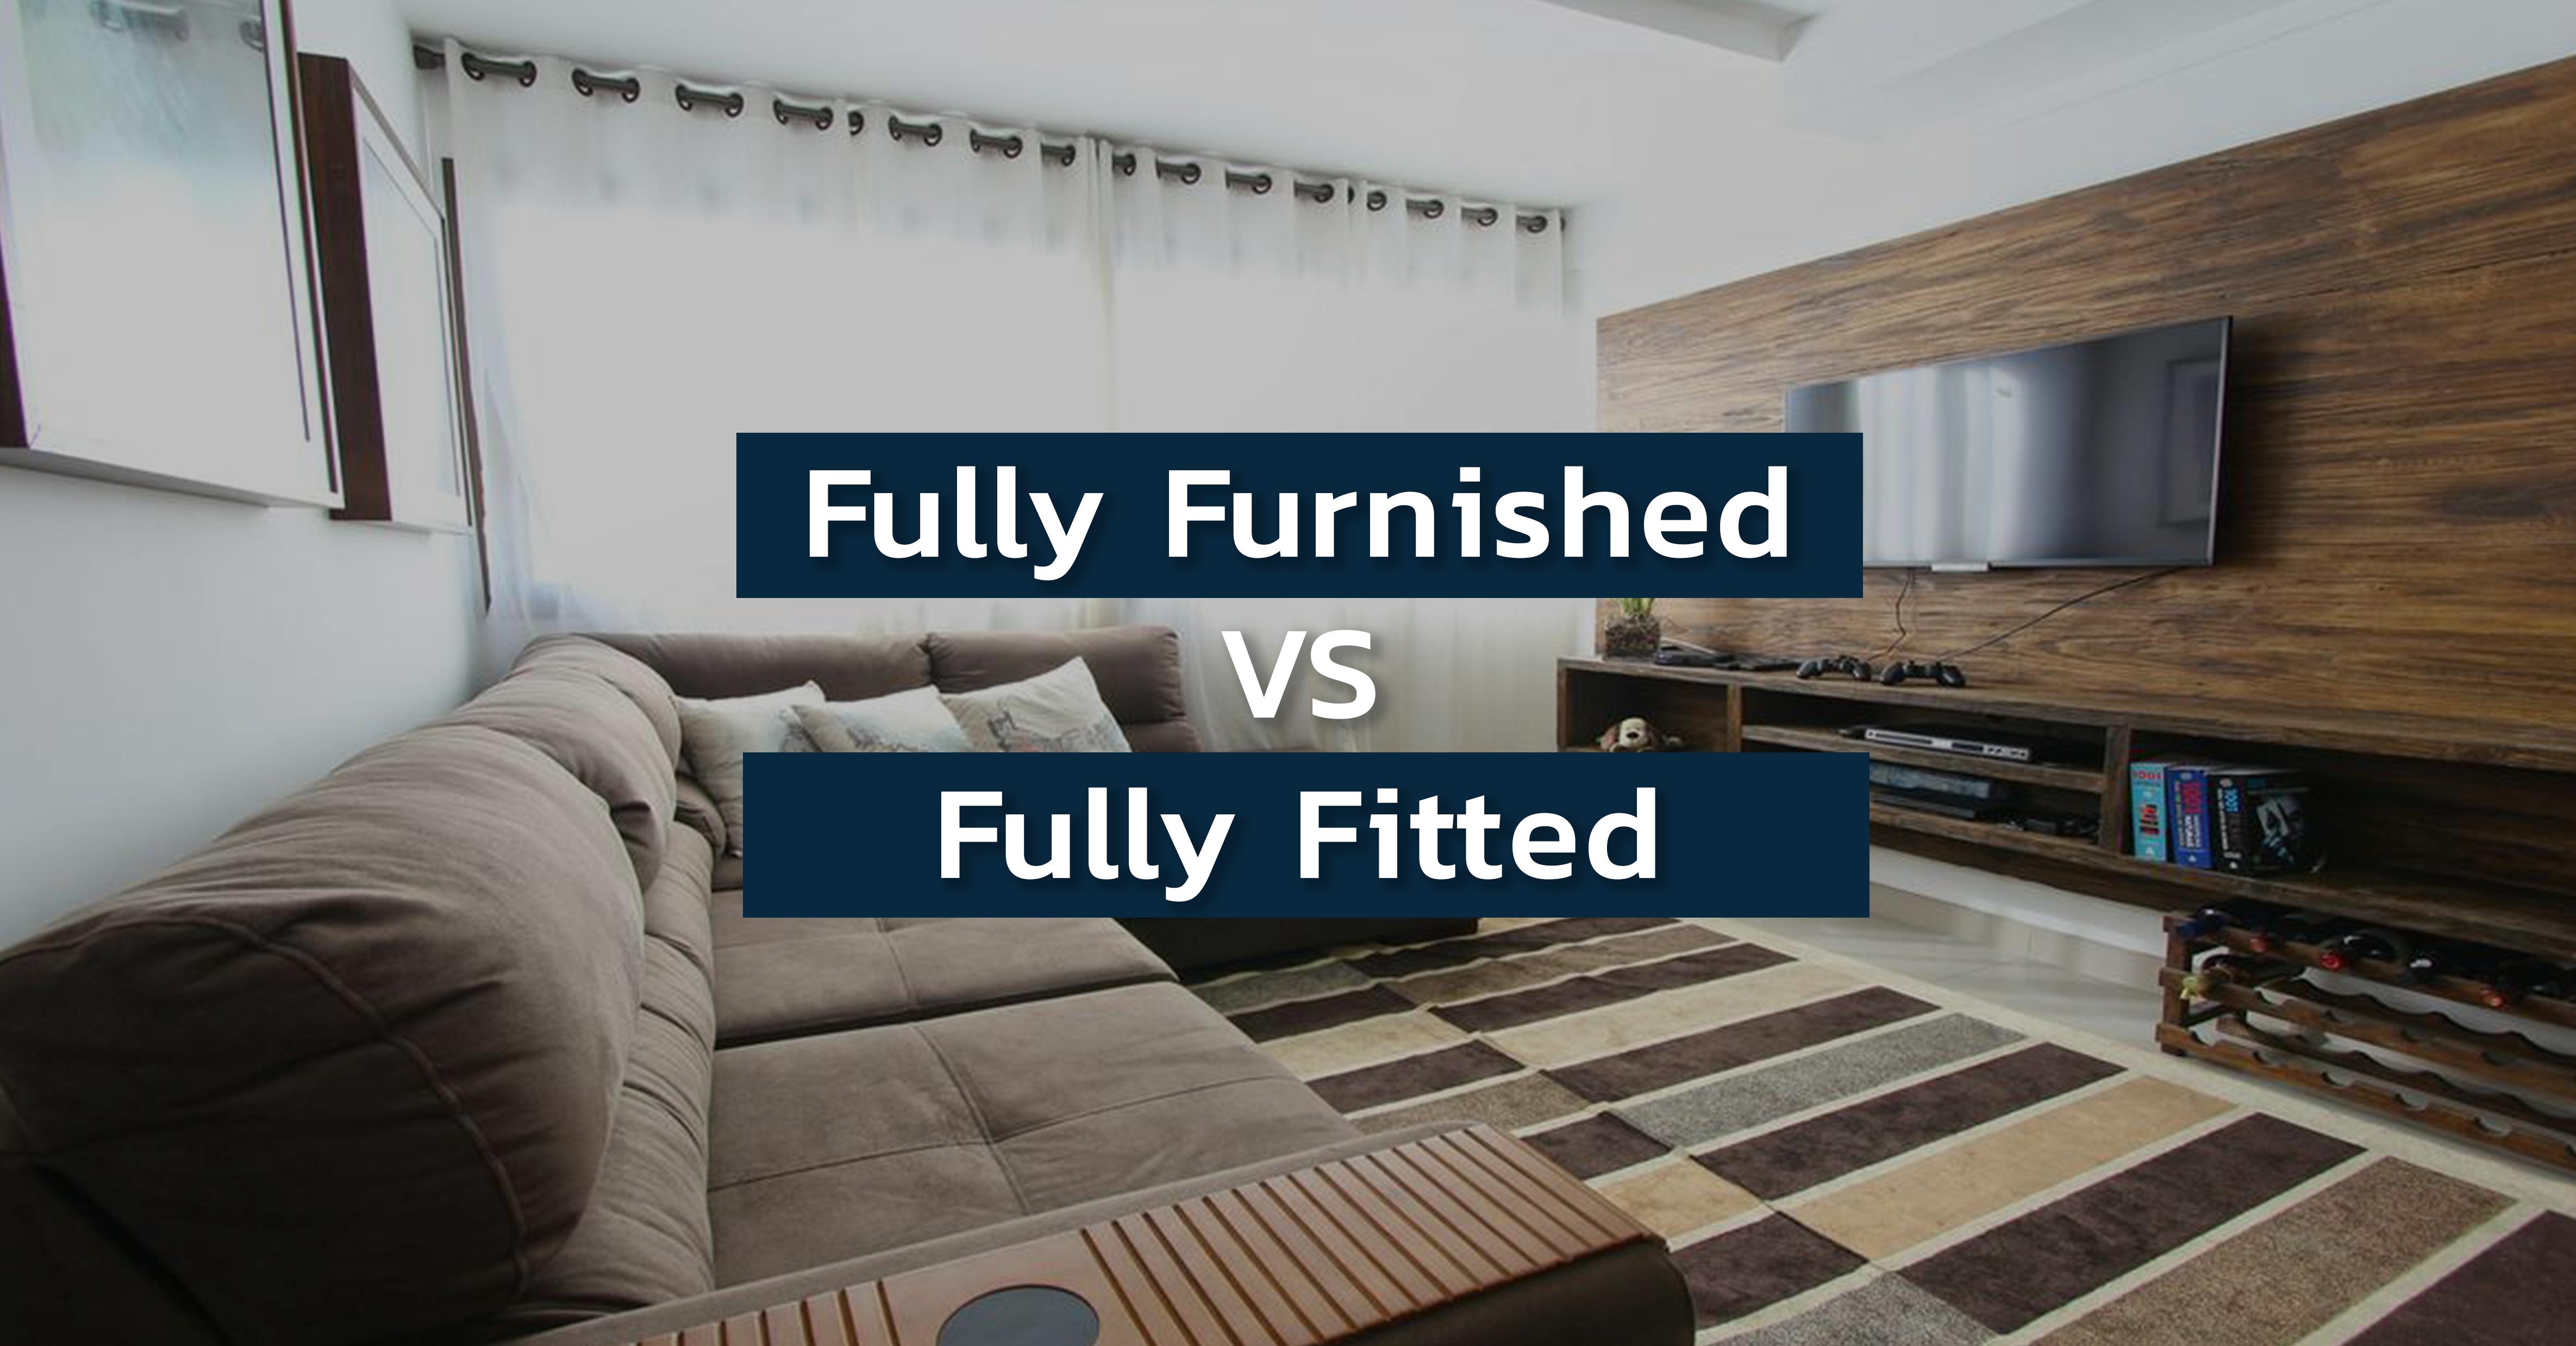 รูปบทความ ห้องแบบ Fully Furnished VS Fully Fitted แบบไหนน่าลงทุน